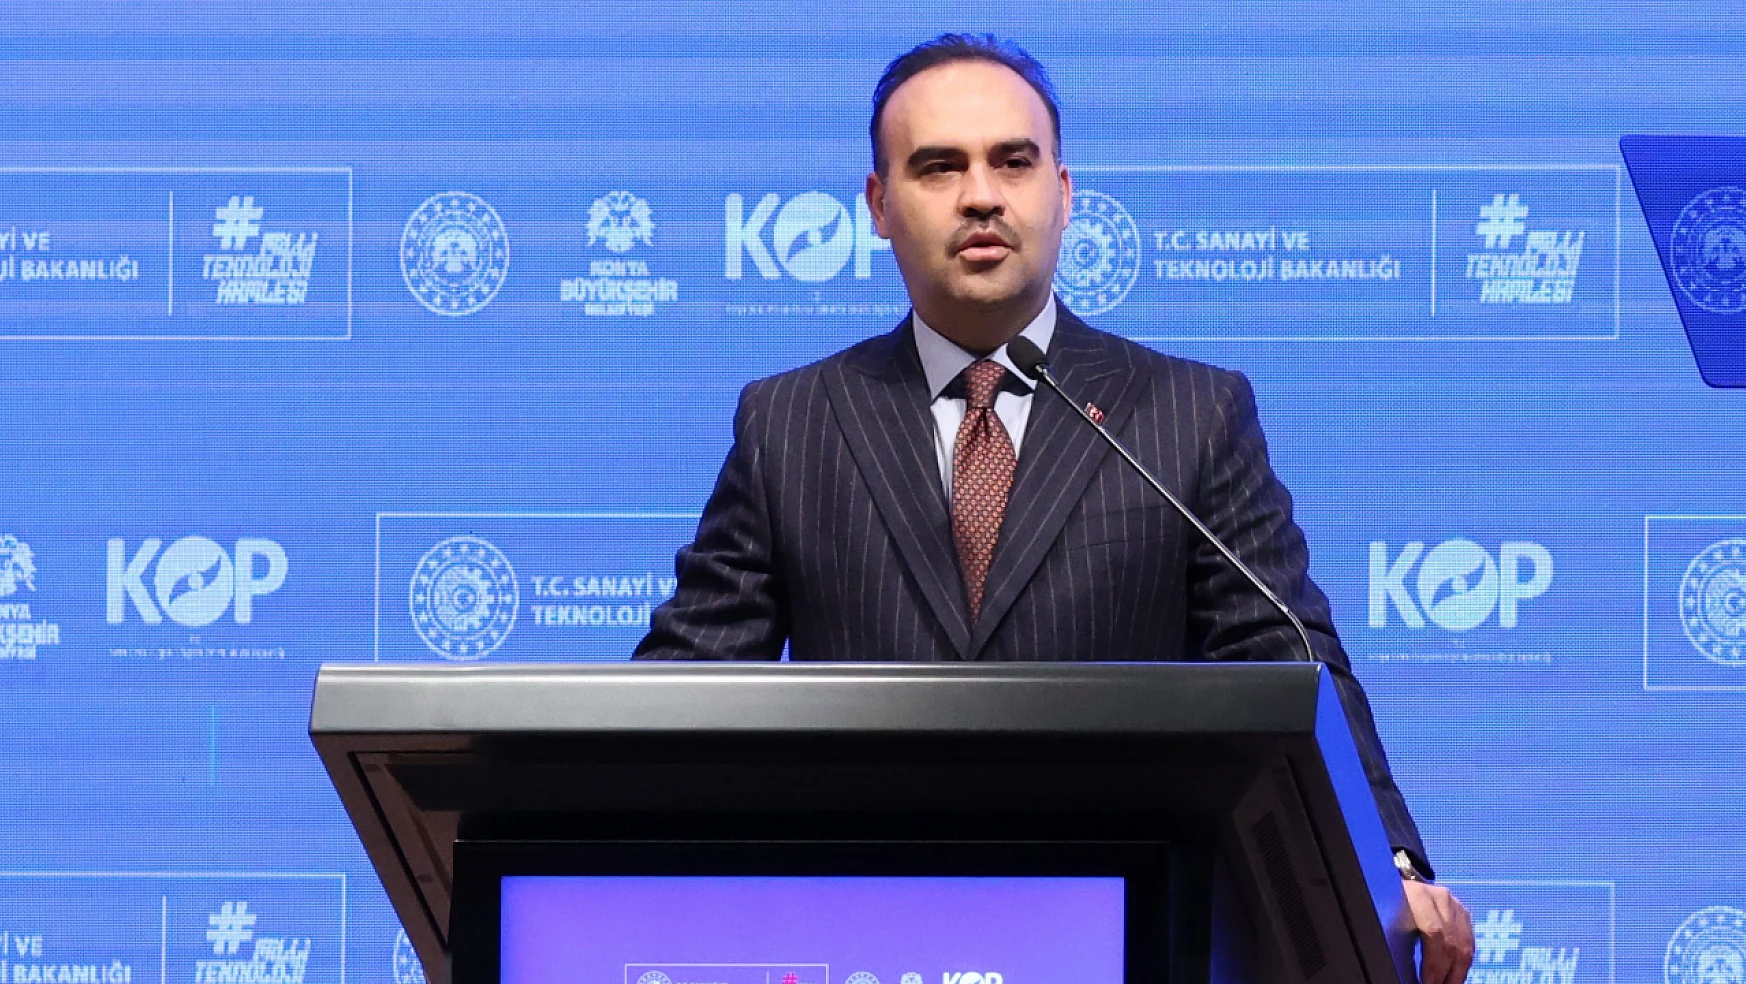 Bakan Kacır: 'Türk sanayisi, küresel üretim üslerinden biridir'